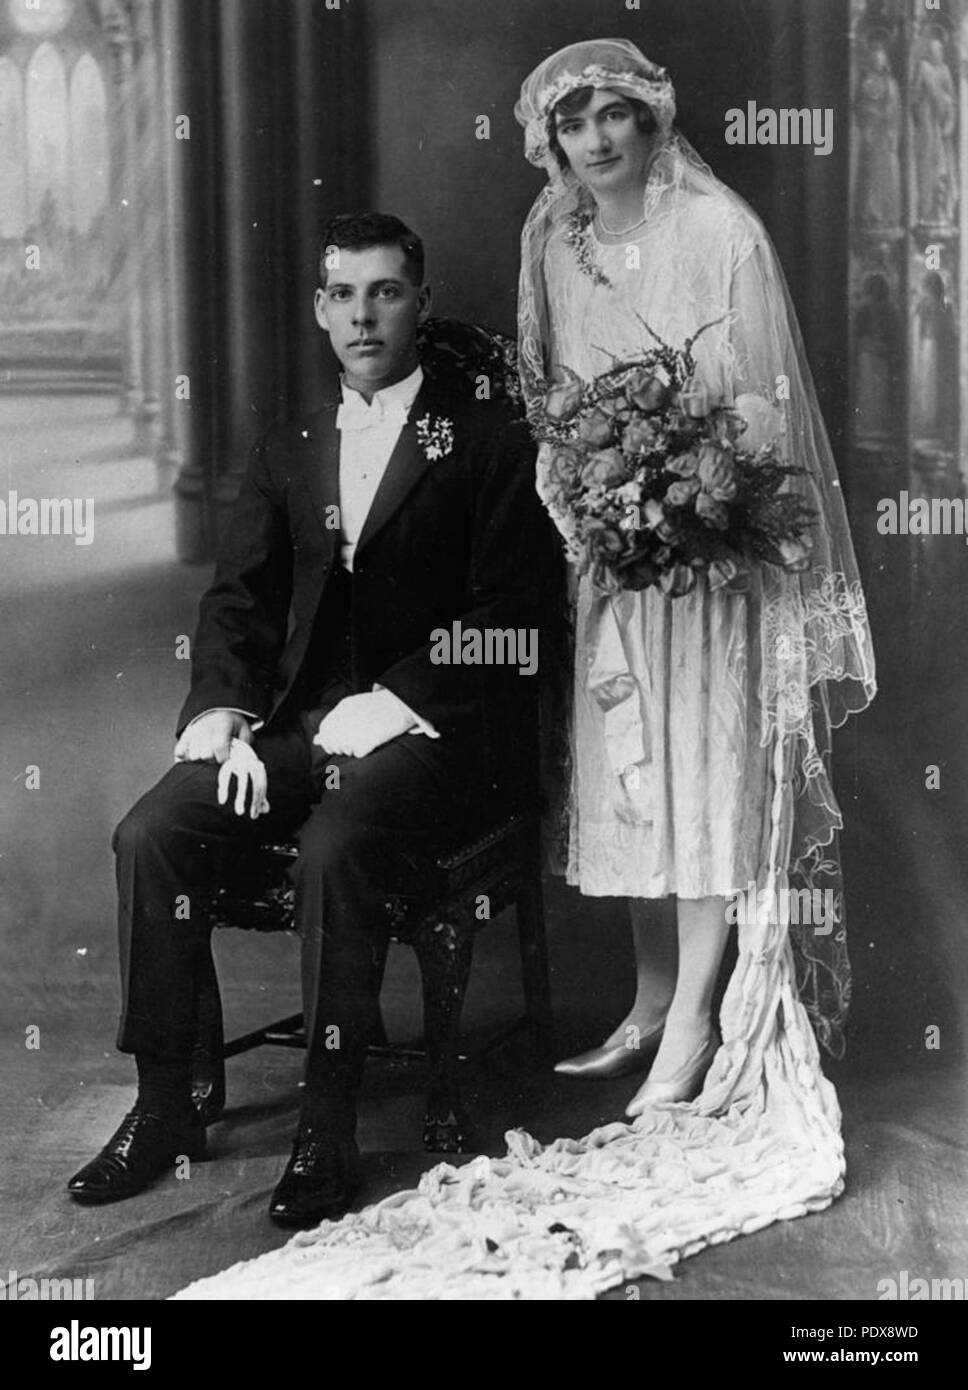 274 StateLibQld 1 83007 Mariage de Millie et Arnold Pengelly à Prairie, Queensland, ca. 1928 Banque D'Images